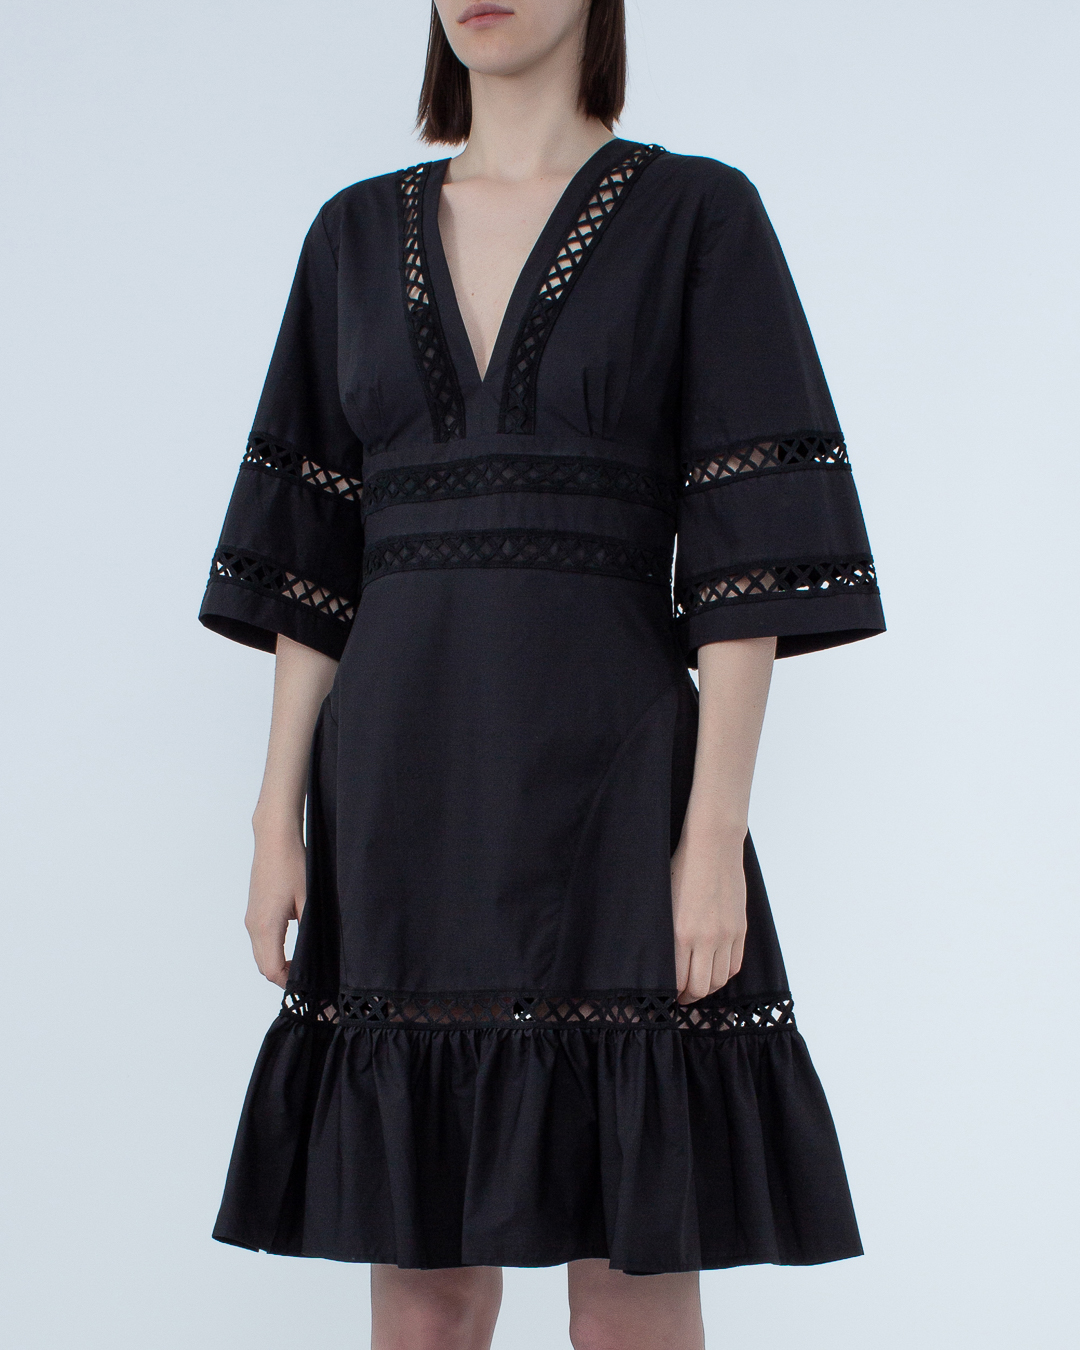 платье MILVA-MI 4019 черный l, размер l - фото 3